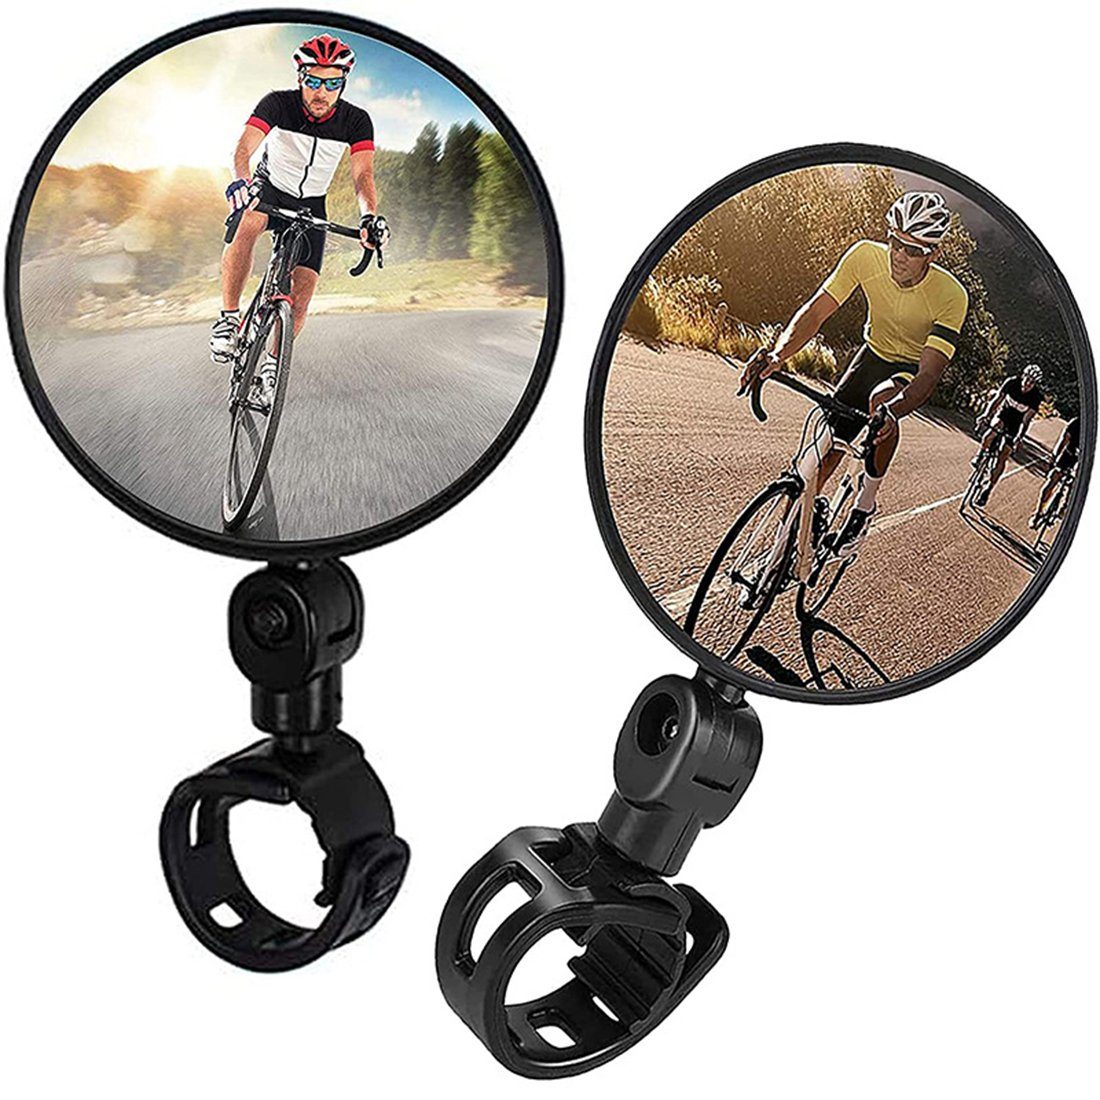 Haiaveng Fahrradspiegel Fahrradspiegel,360° Drehbar Fahrradspiegel Klappbar,  für Lenker 20-38mm, Fahrrad Spiegel für e-bike Rennrad (2 Stück)